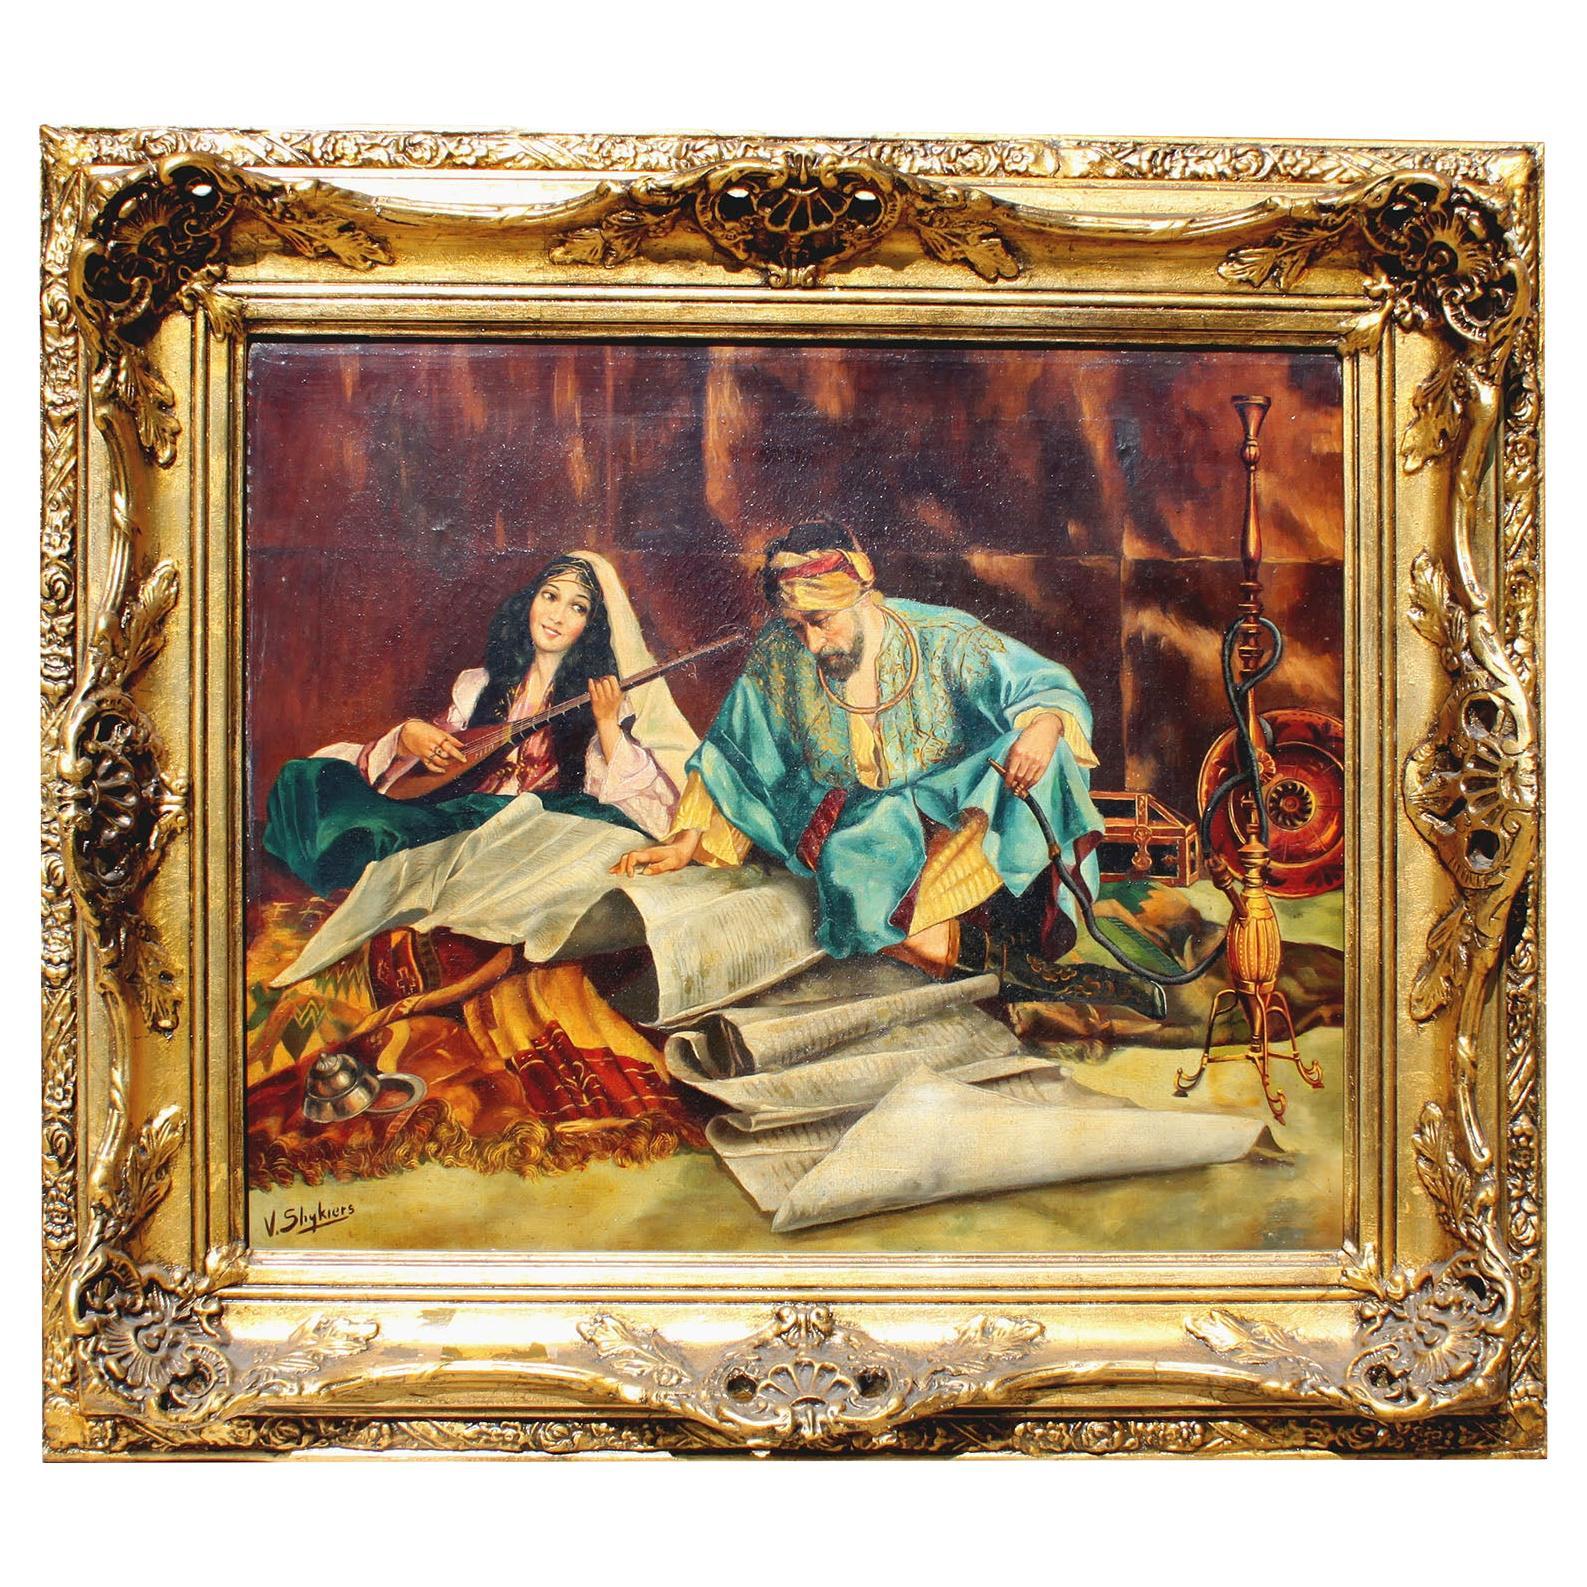 Óleo sobre lienzo orientalista de principios del siglo XX titulado 'El favorito del maestro'